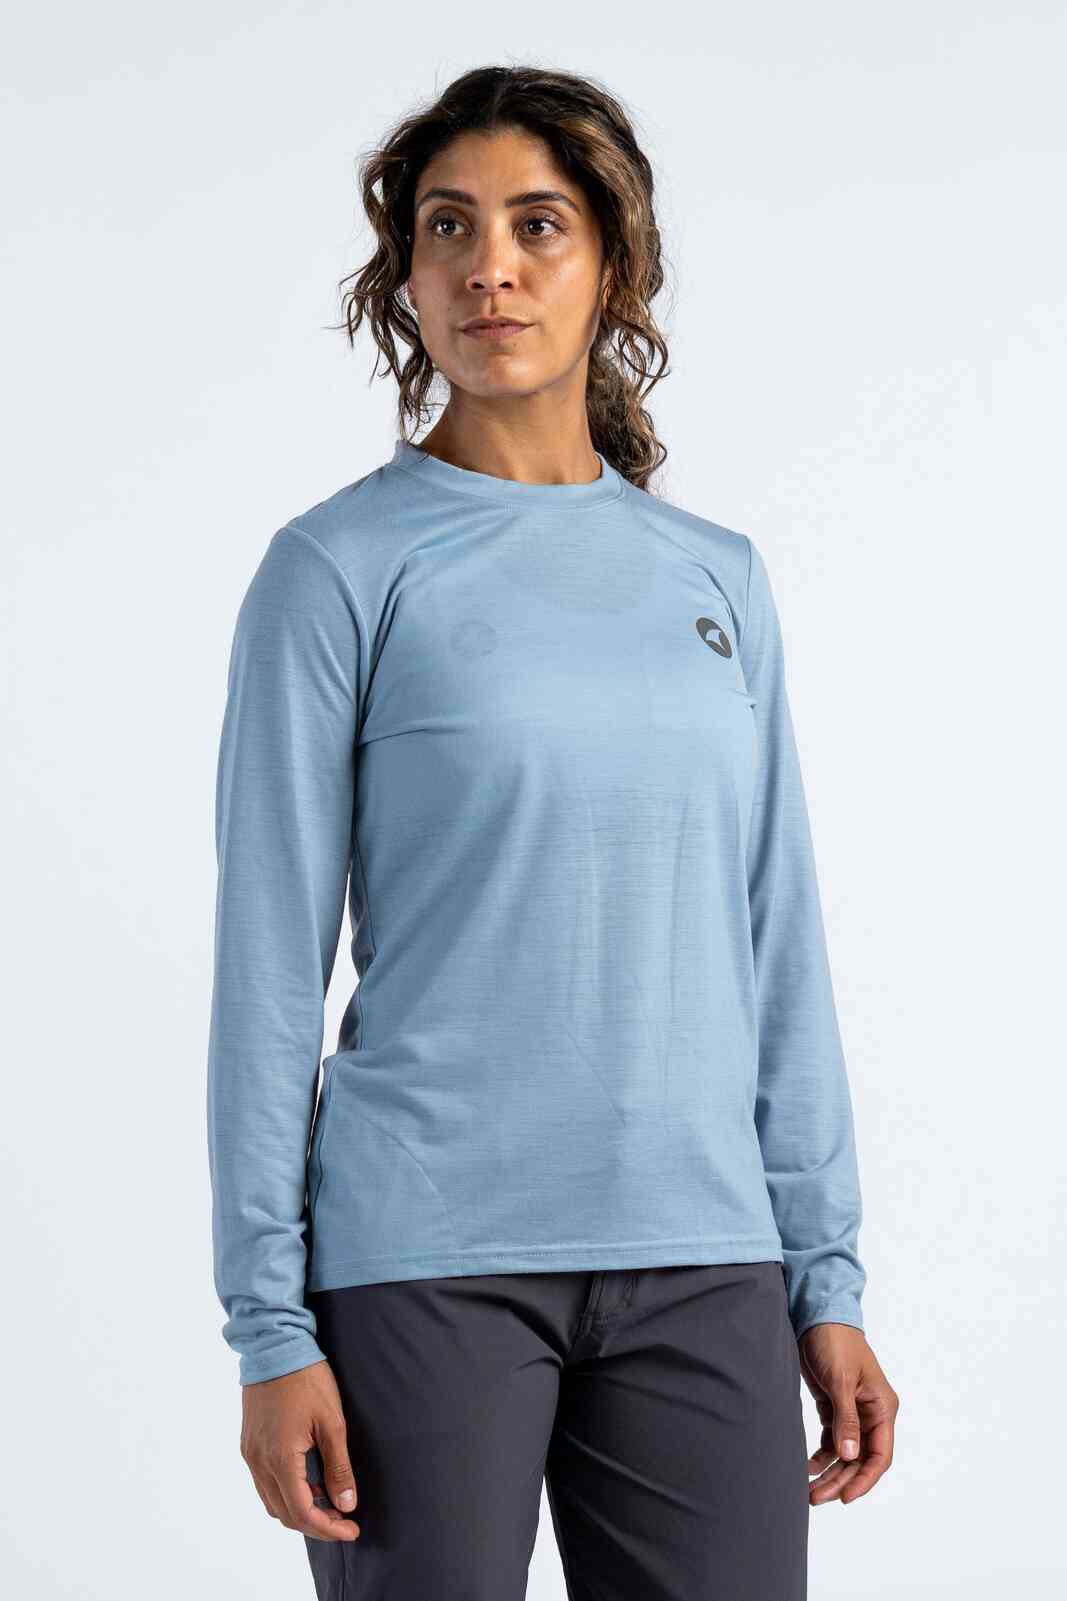 Women's Merino Wool Long Sleeve MTB Jersey - Light Blue Front View